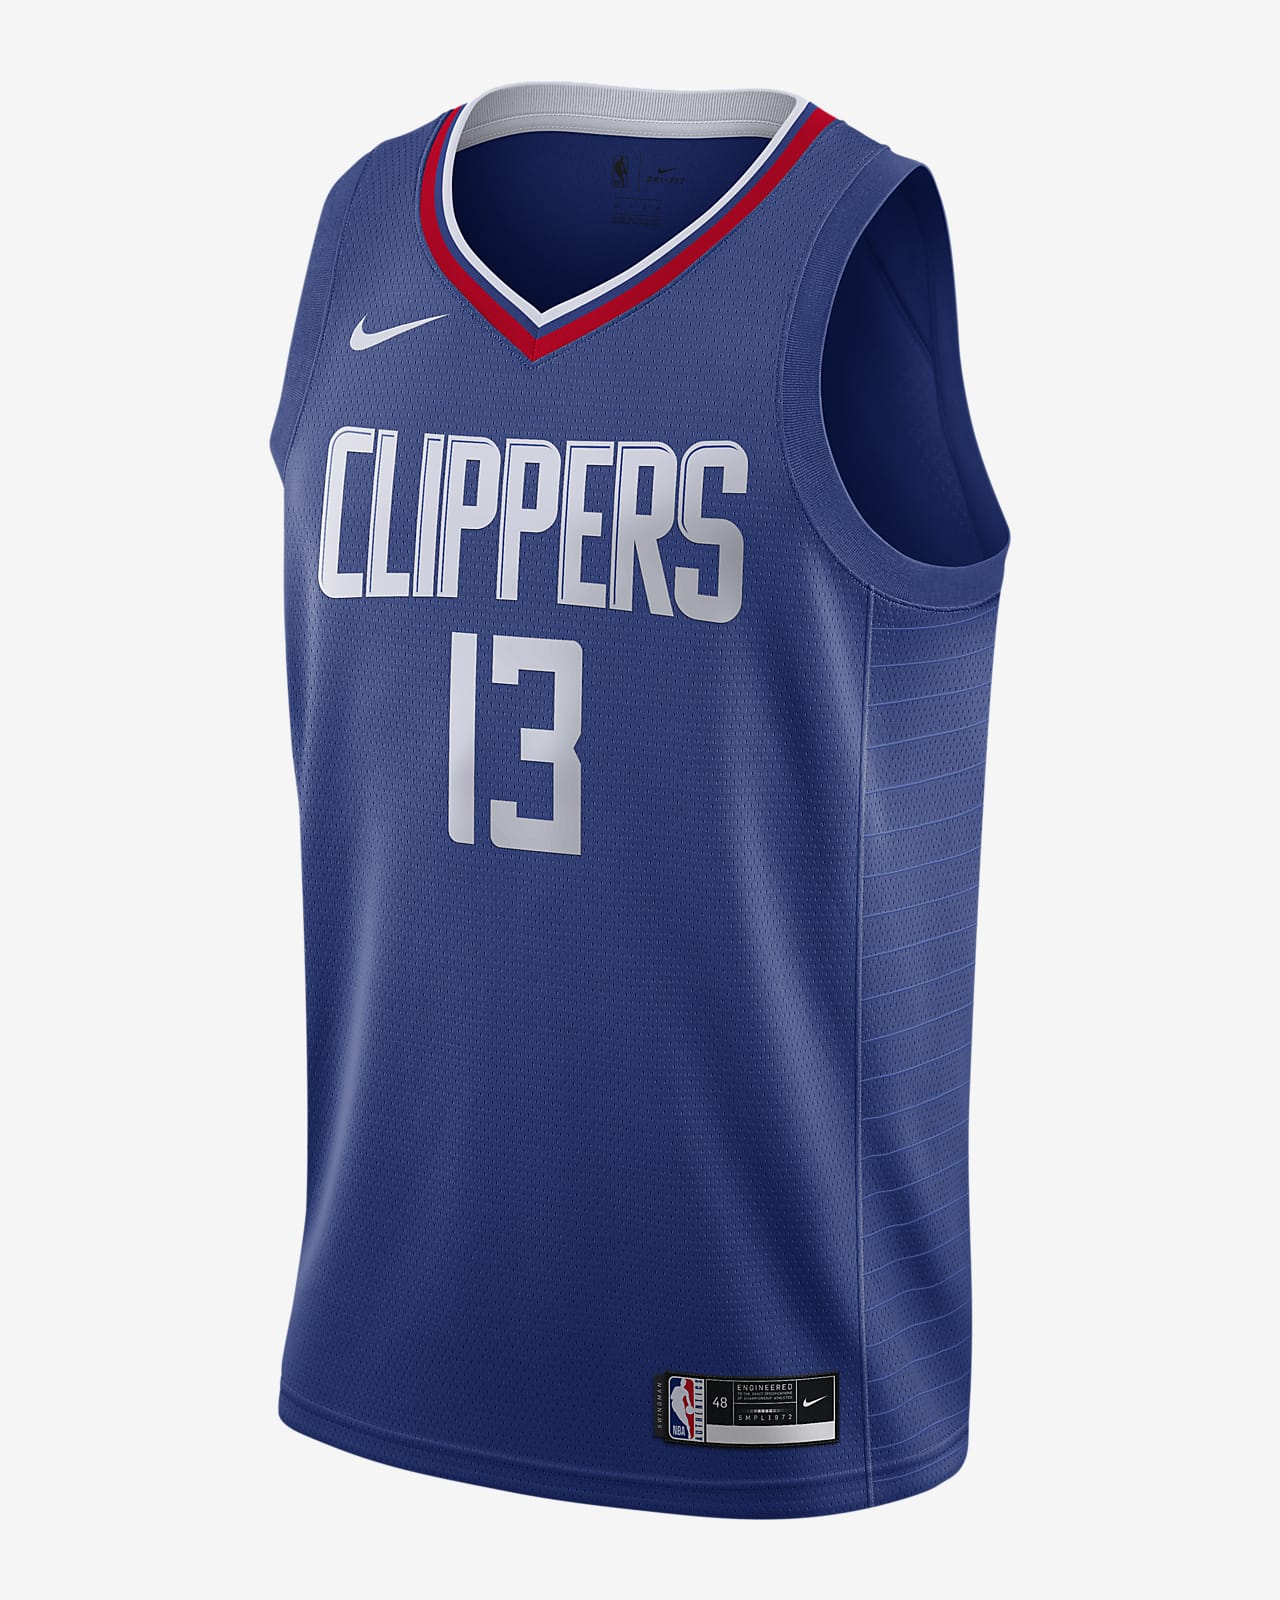 Jersey Swingman Nike de la NBA Paul George Clippers Icon Edition 2020